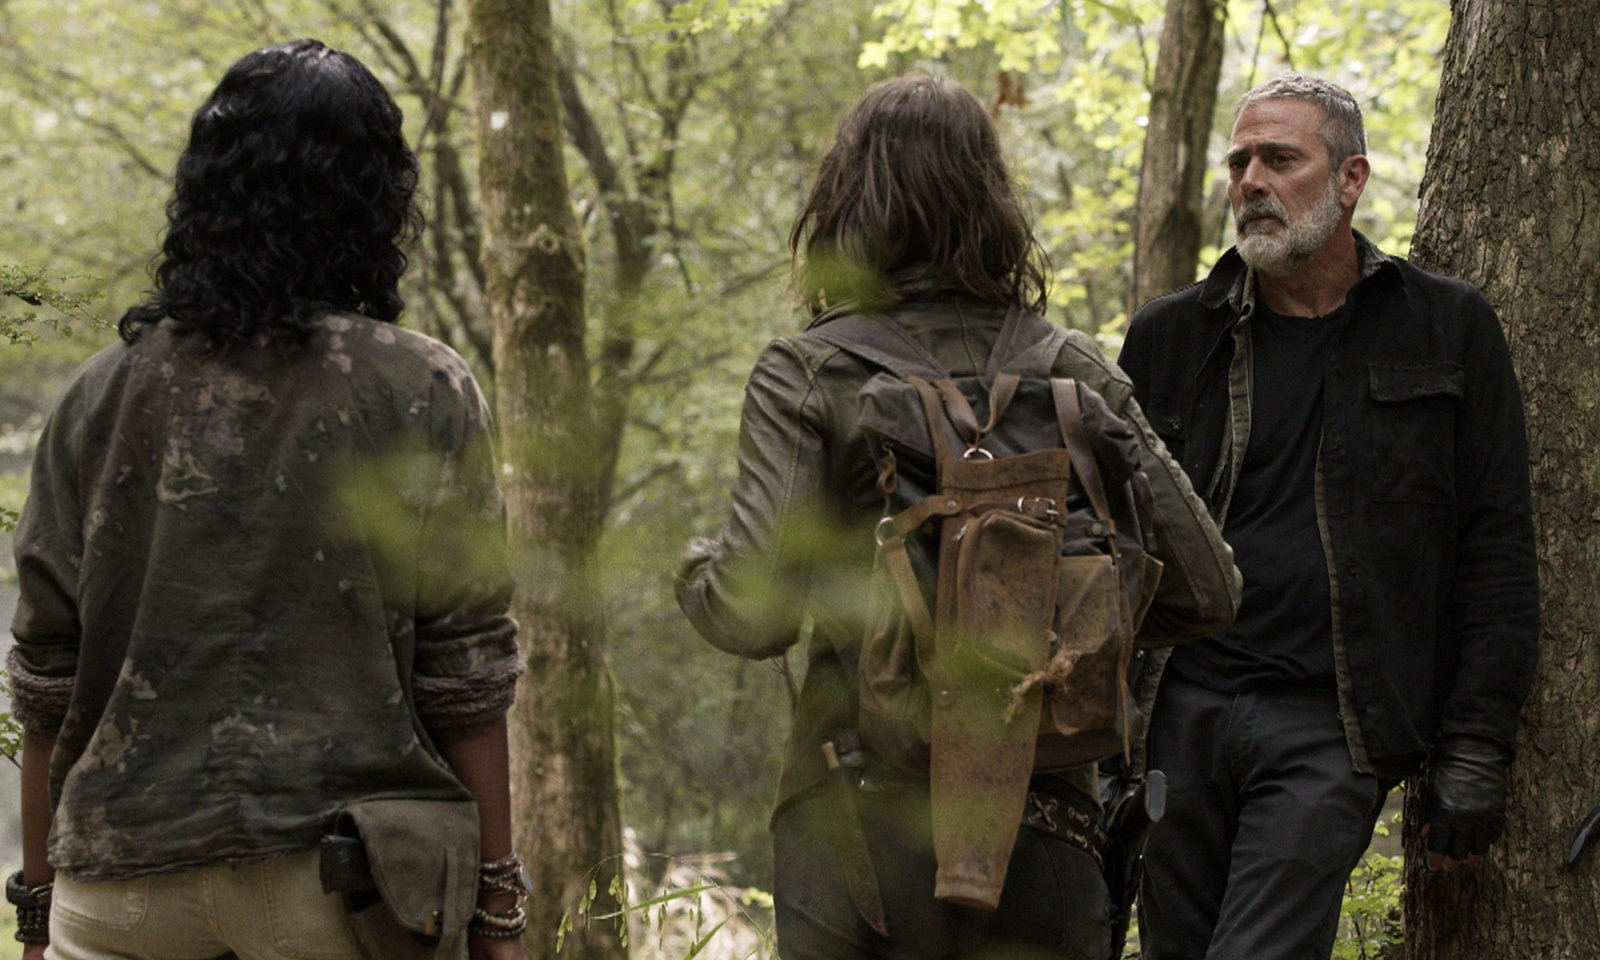 Negan olhando para Maggie e Annie em cena do episódio 16 da 11ª temporada de The Walking Dead.